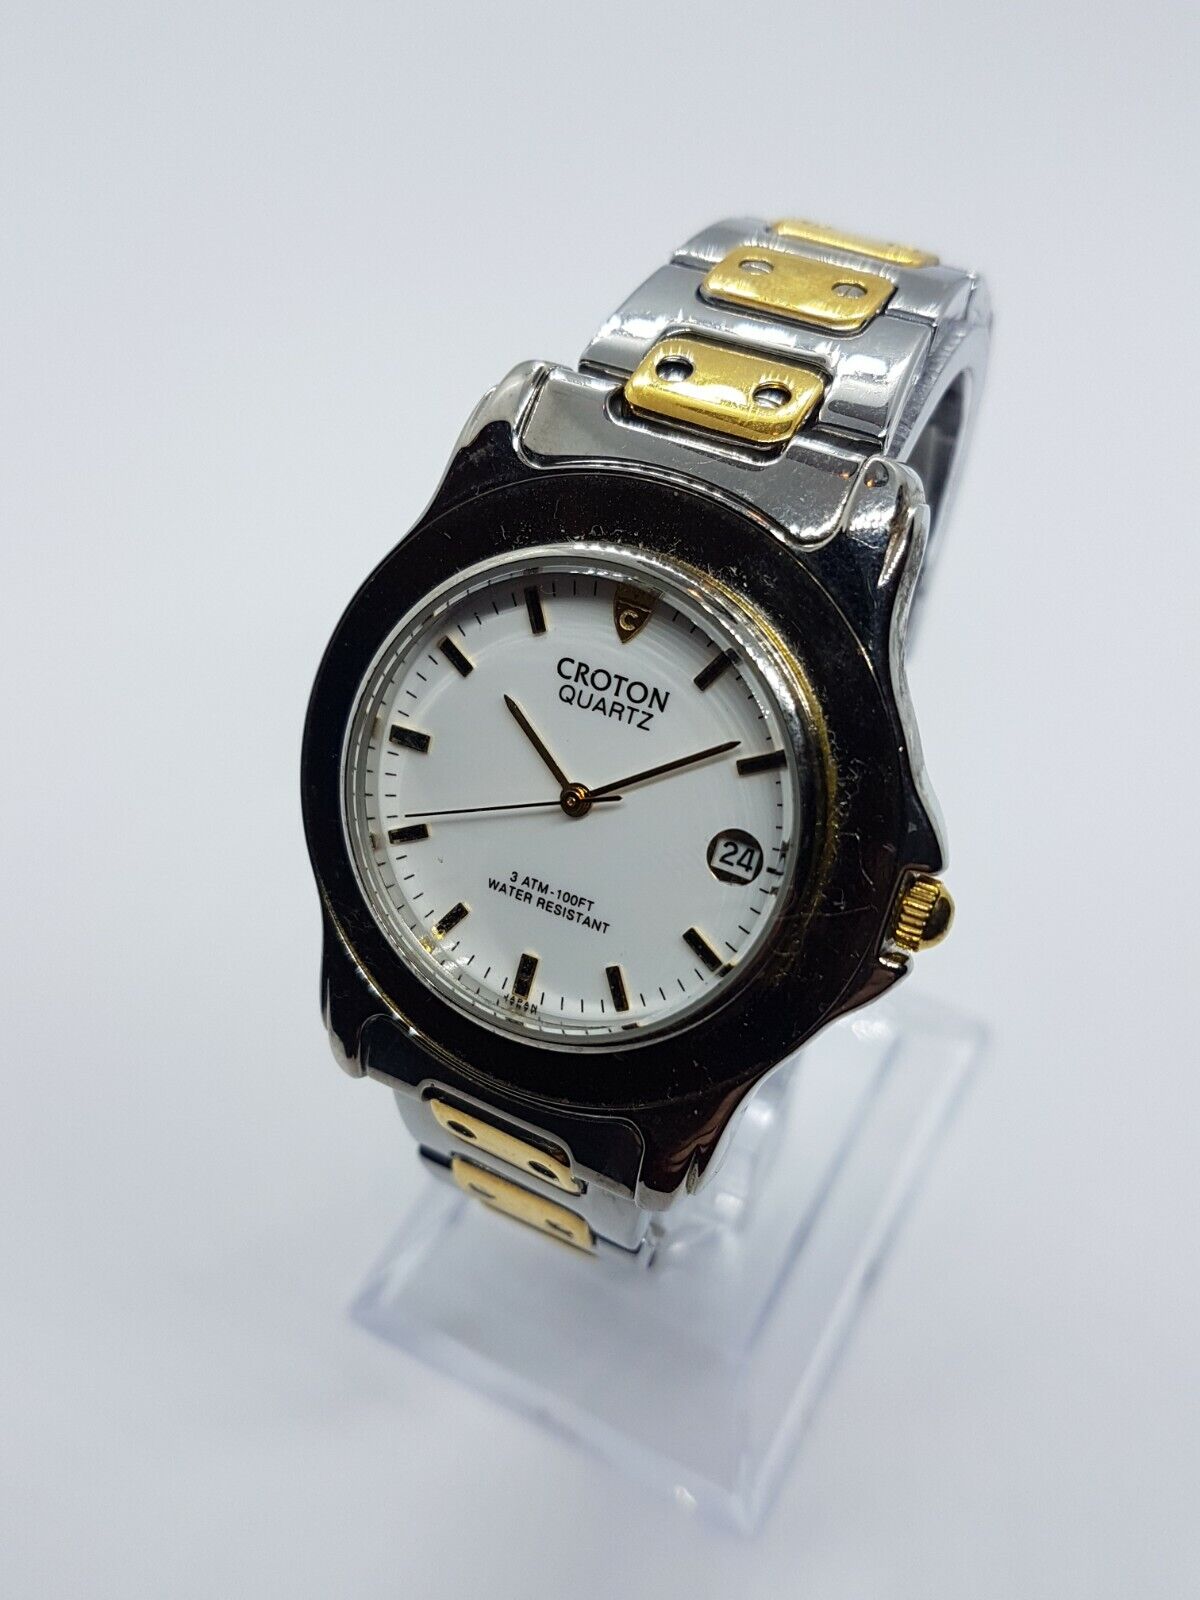 Croton Quartz Date Watch | Two Tone Gold And Silver Croton Elegant Dress Watch Popularna WYPRZEDAŻ, ograniczona wyprzedaż